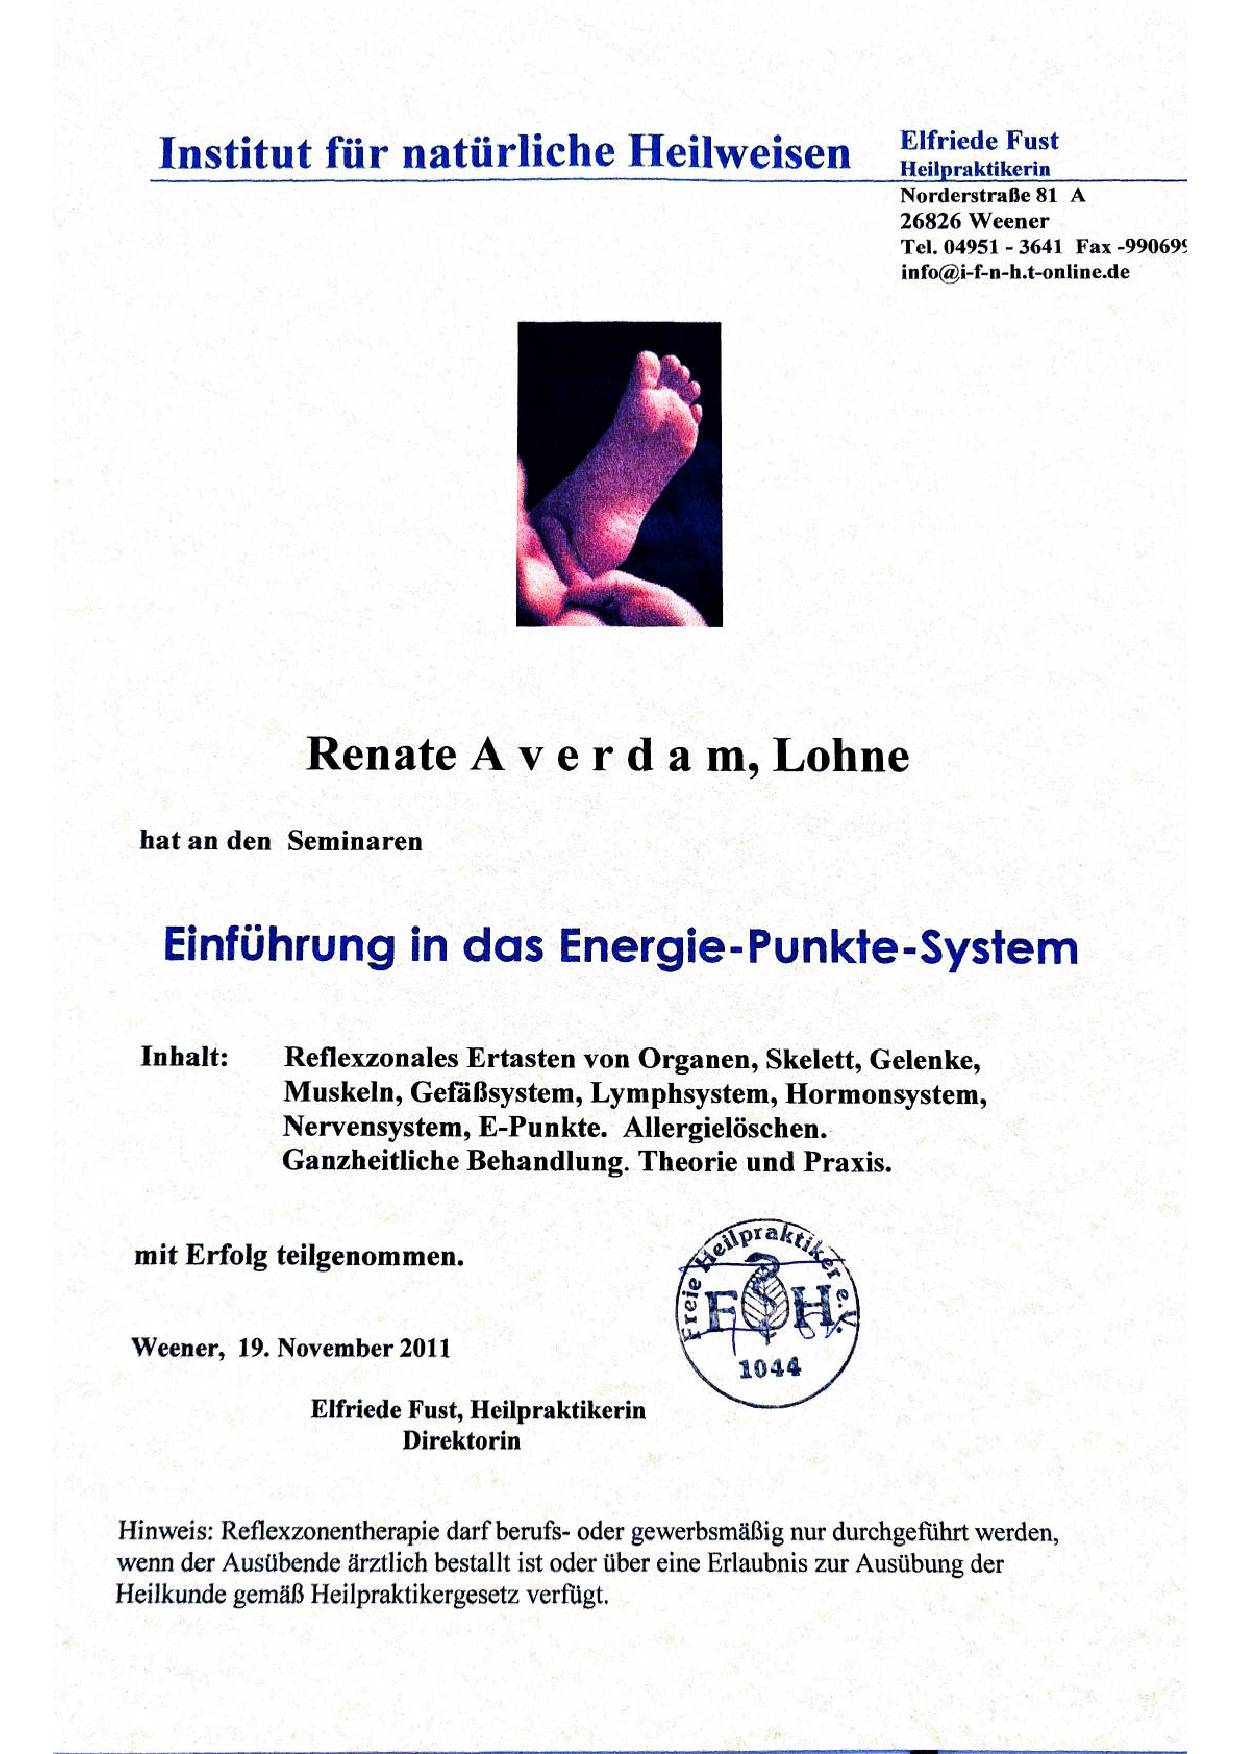 images/Benutzerbilder/Renate-Averdam/Energie-Punkte-System-Zertifikat.jpg